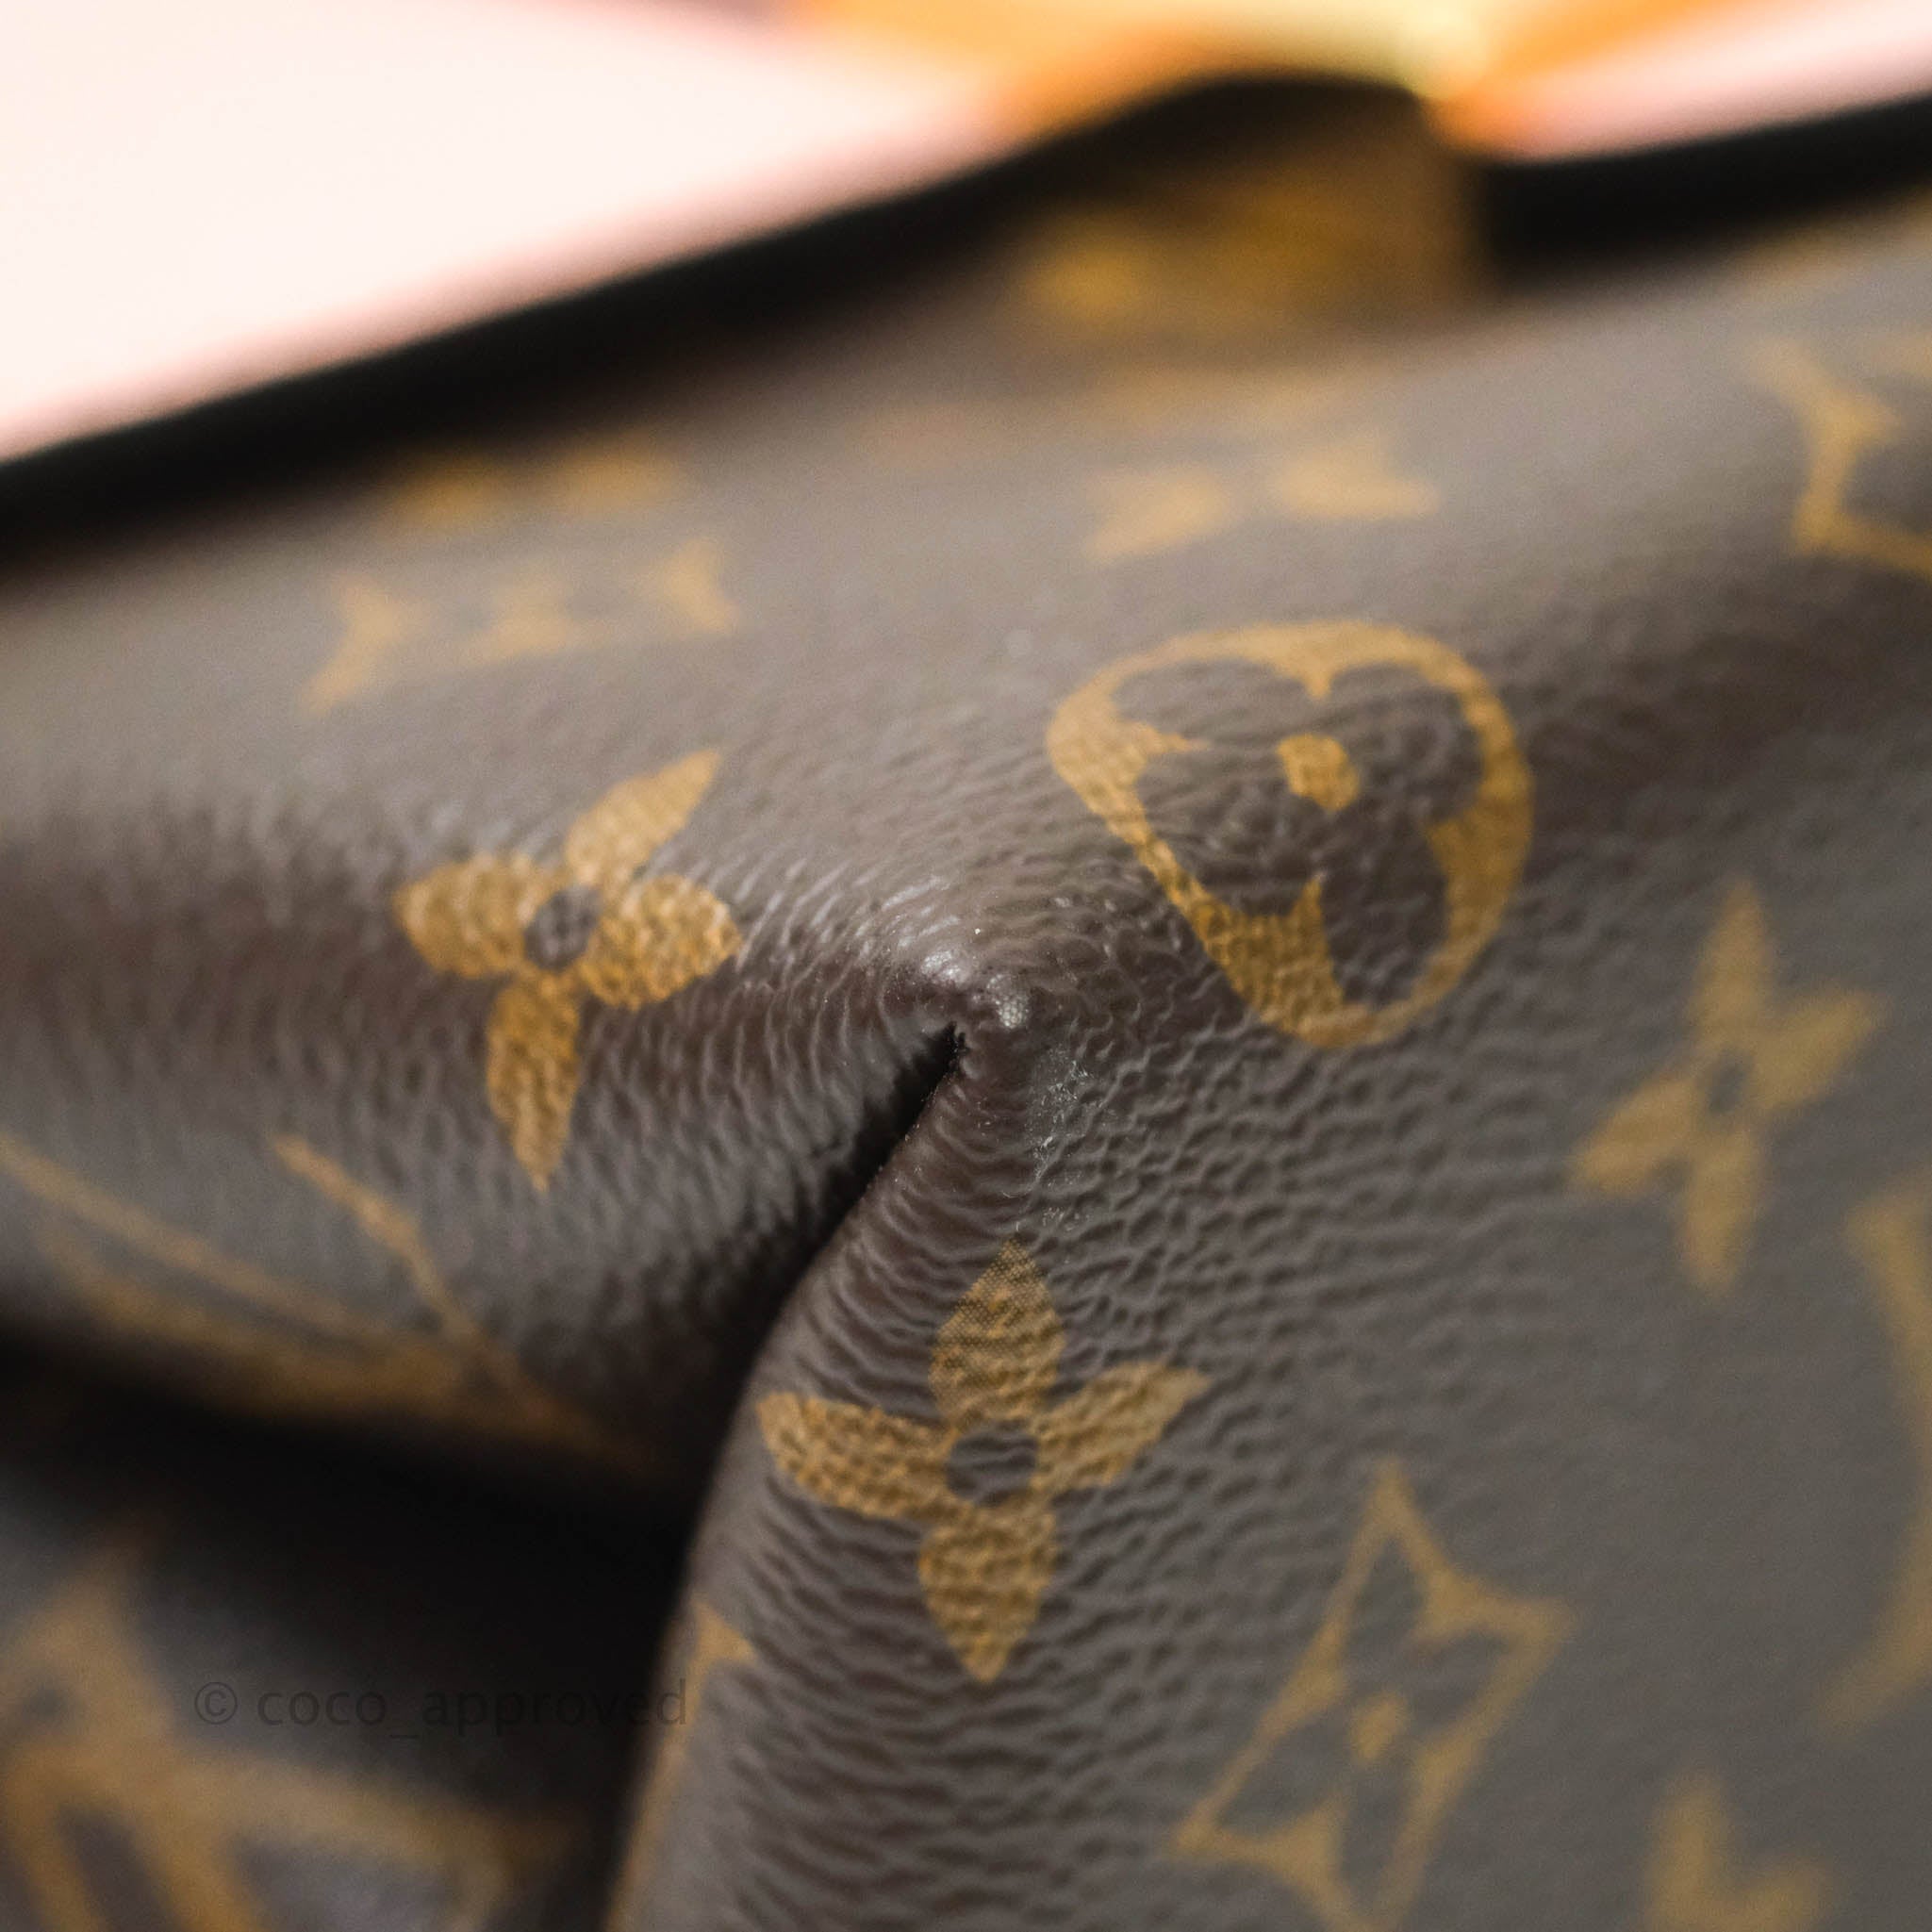 Louis Vuitton FASCINATION Lockit BB Monogram Bouclette Noel Bag